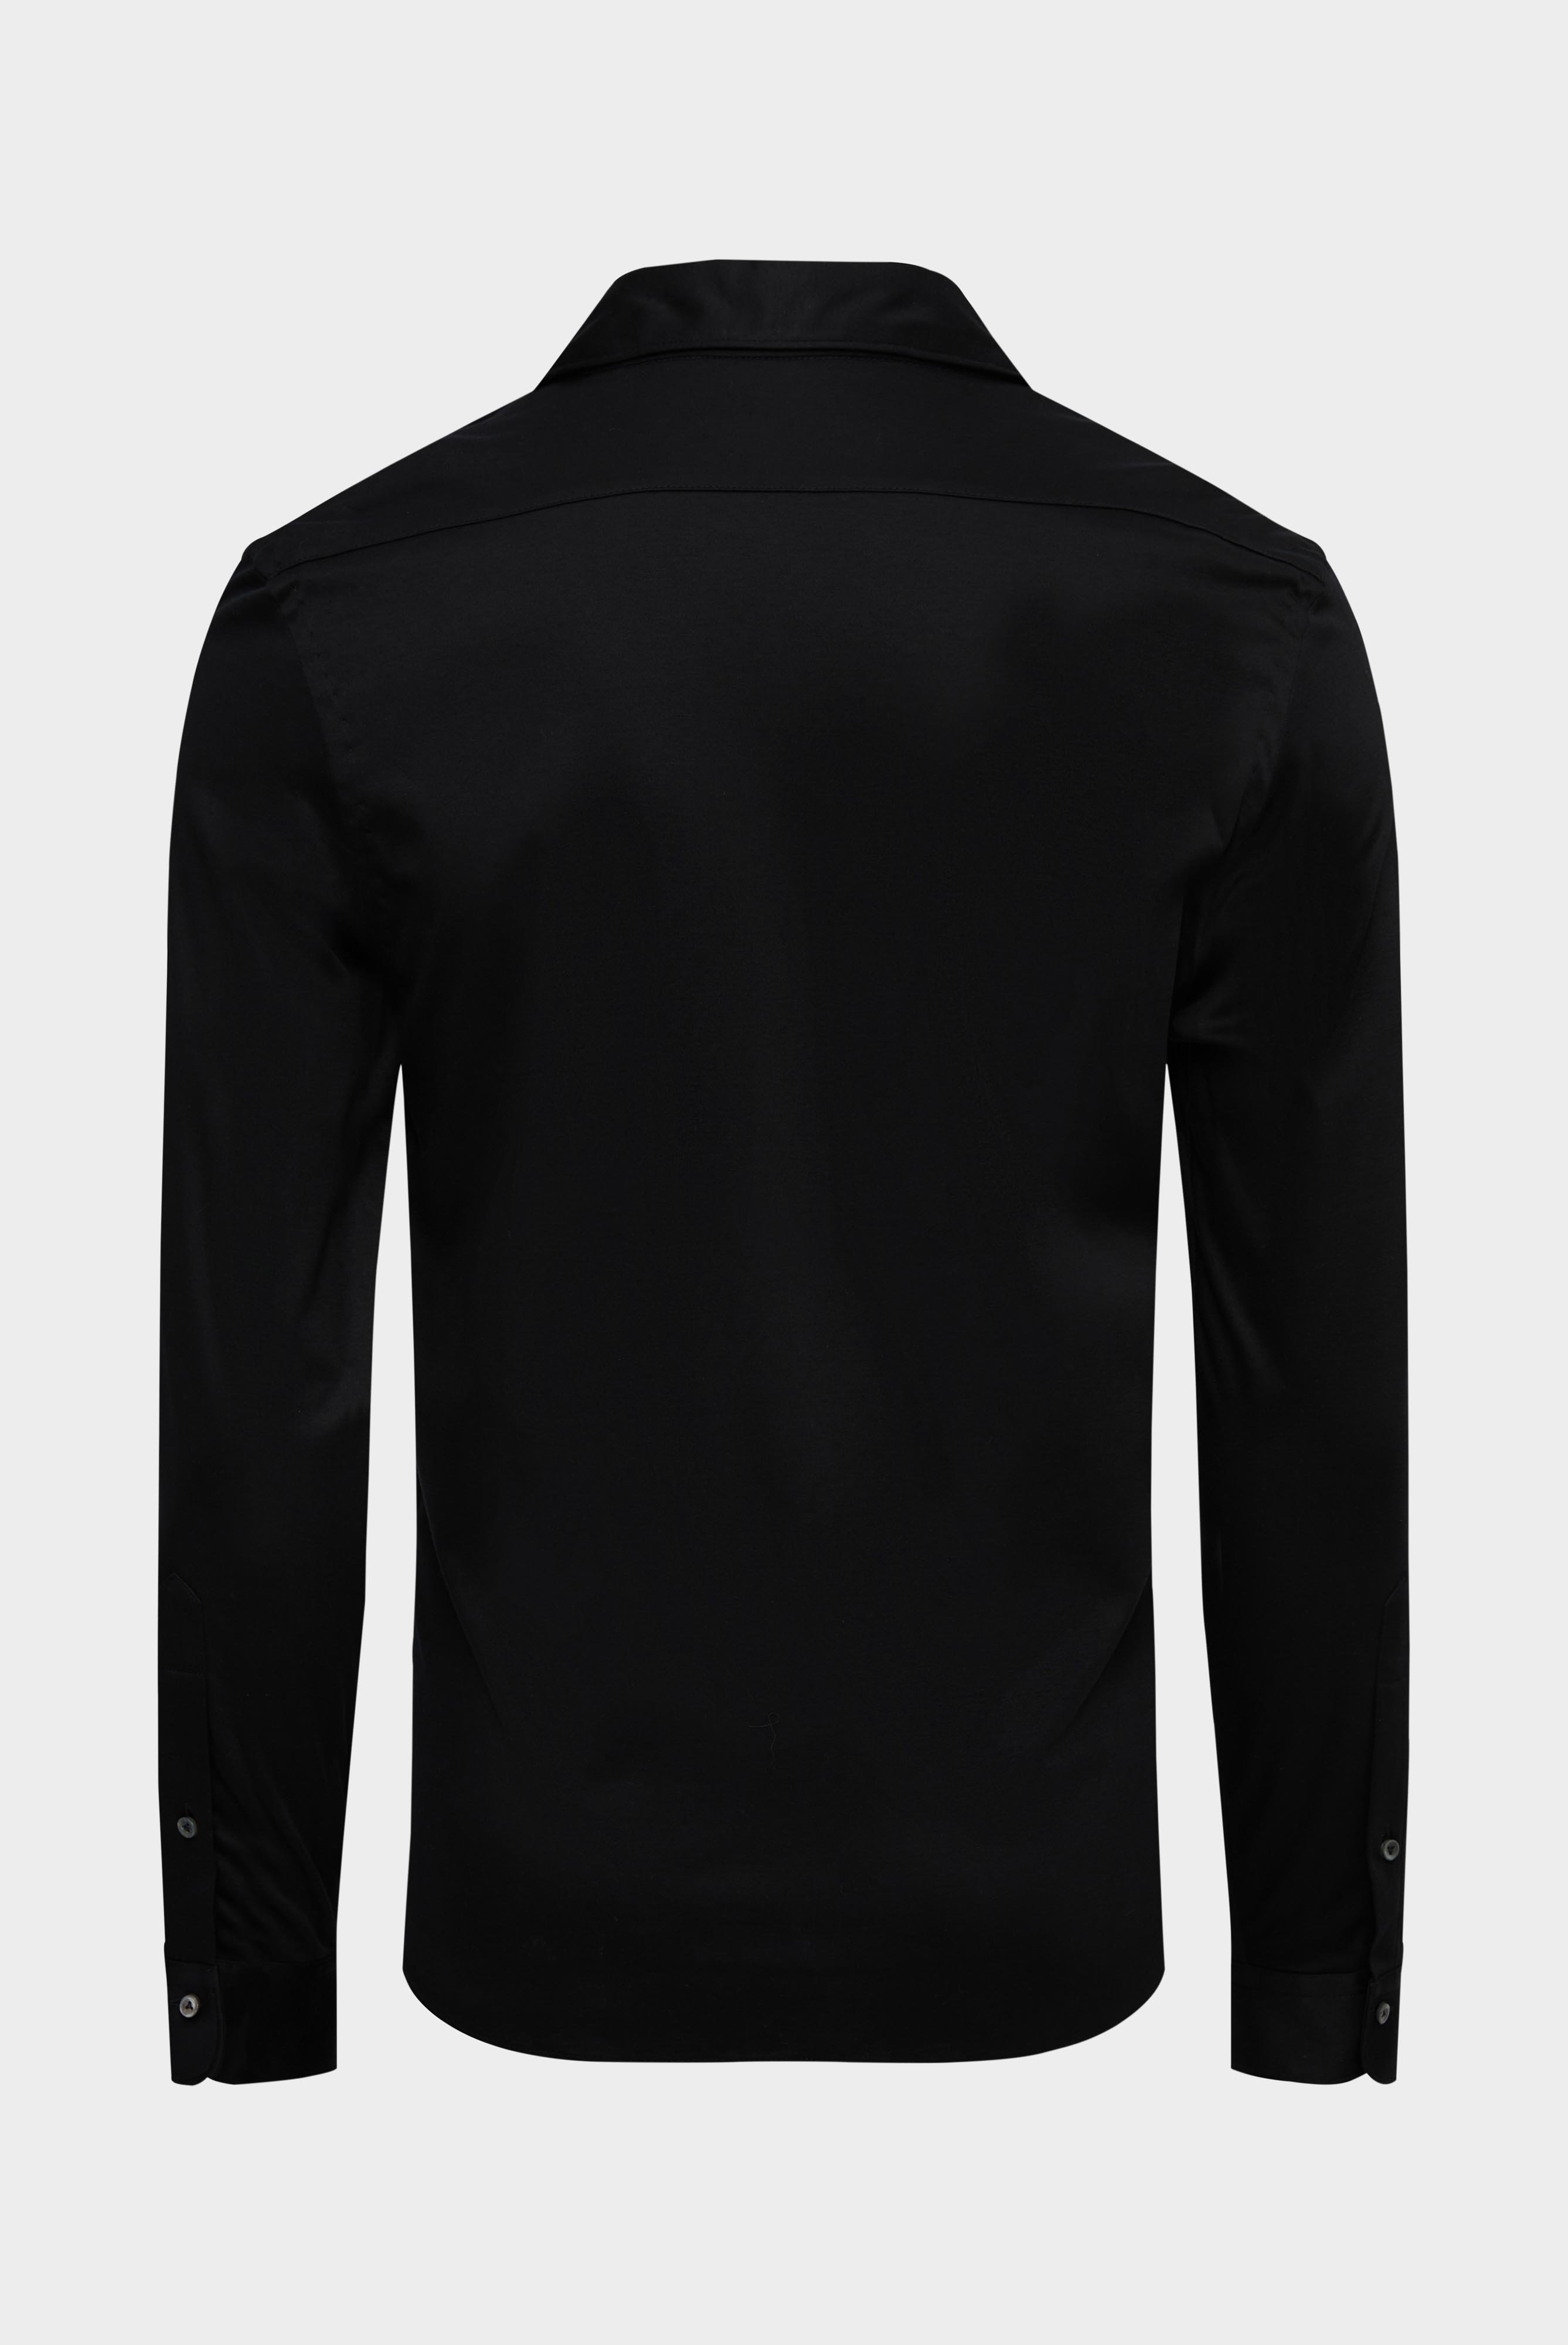 Jersey Hemden+Jersey Hemd aus Schweizer Baumwolle Slim Fit+20.1682.UC.180031.099.L